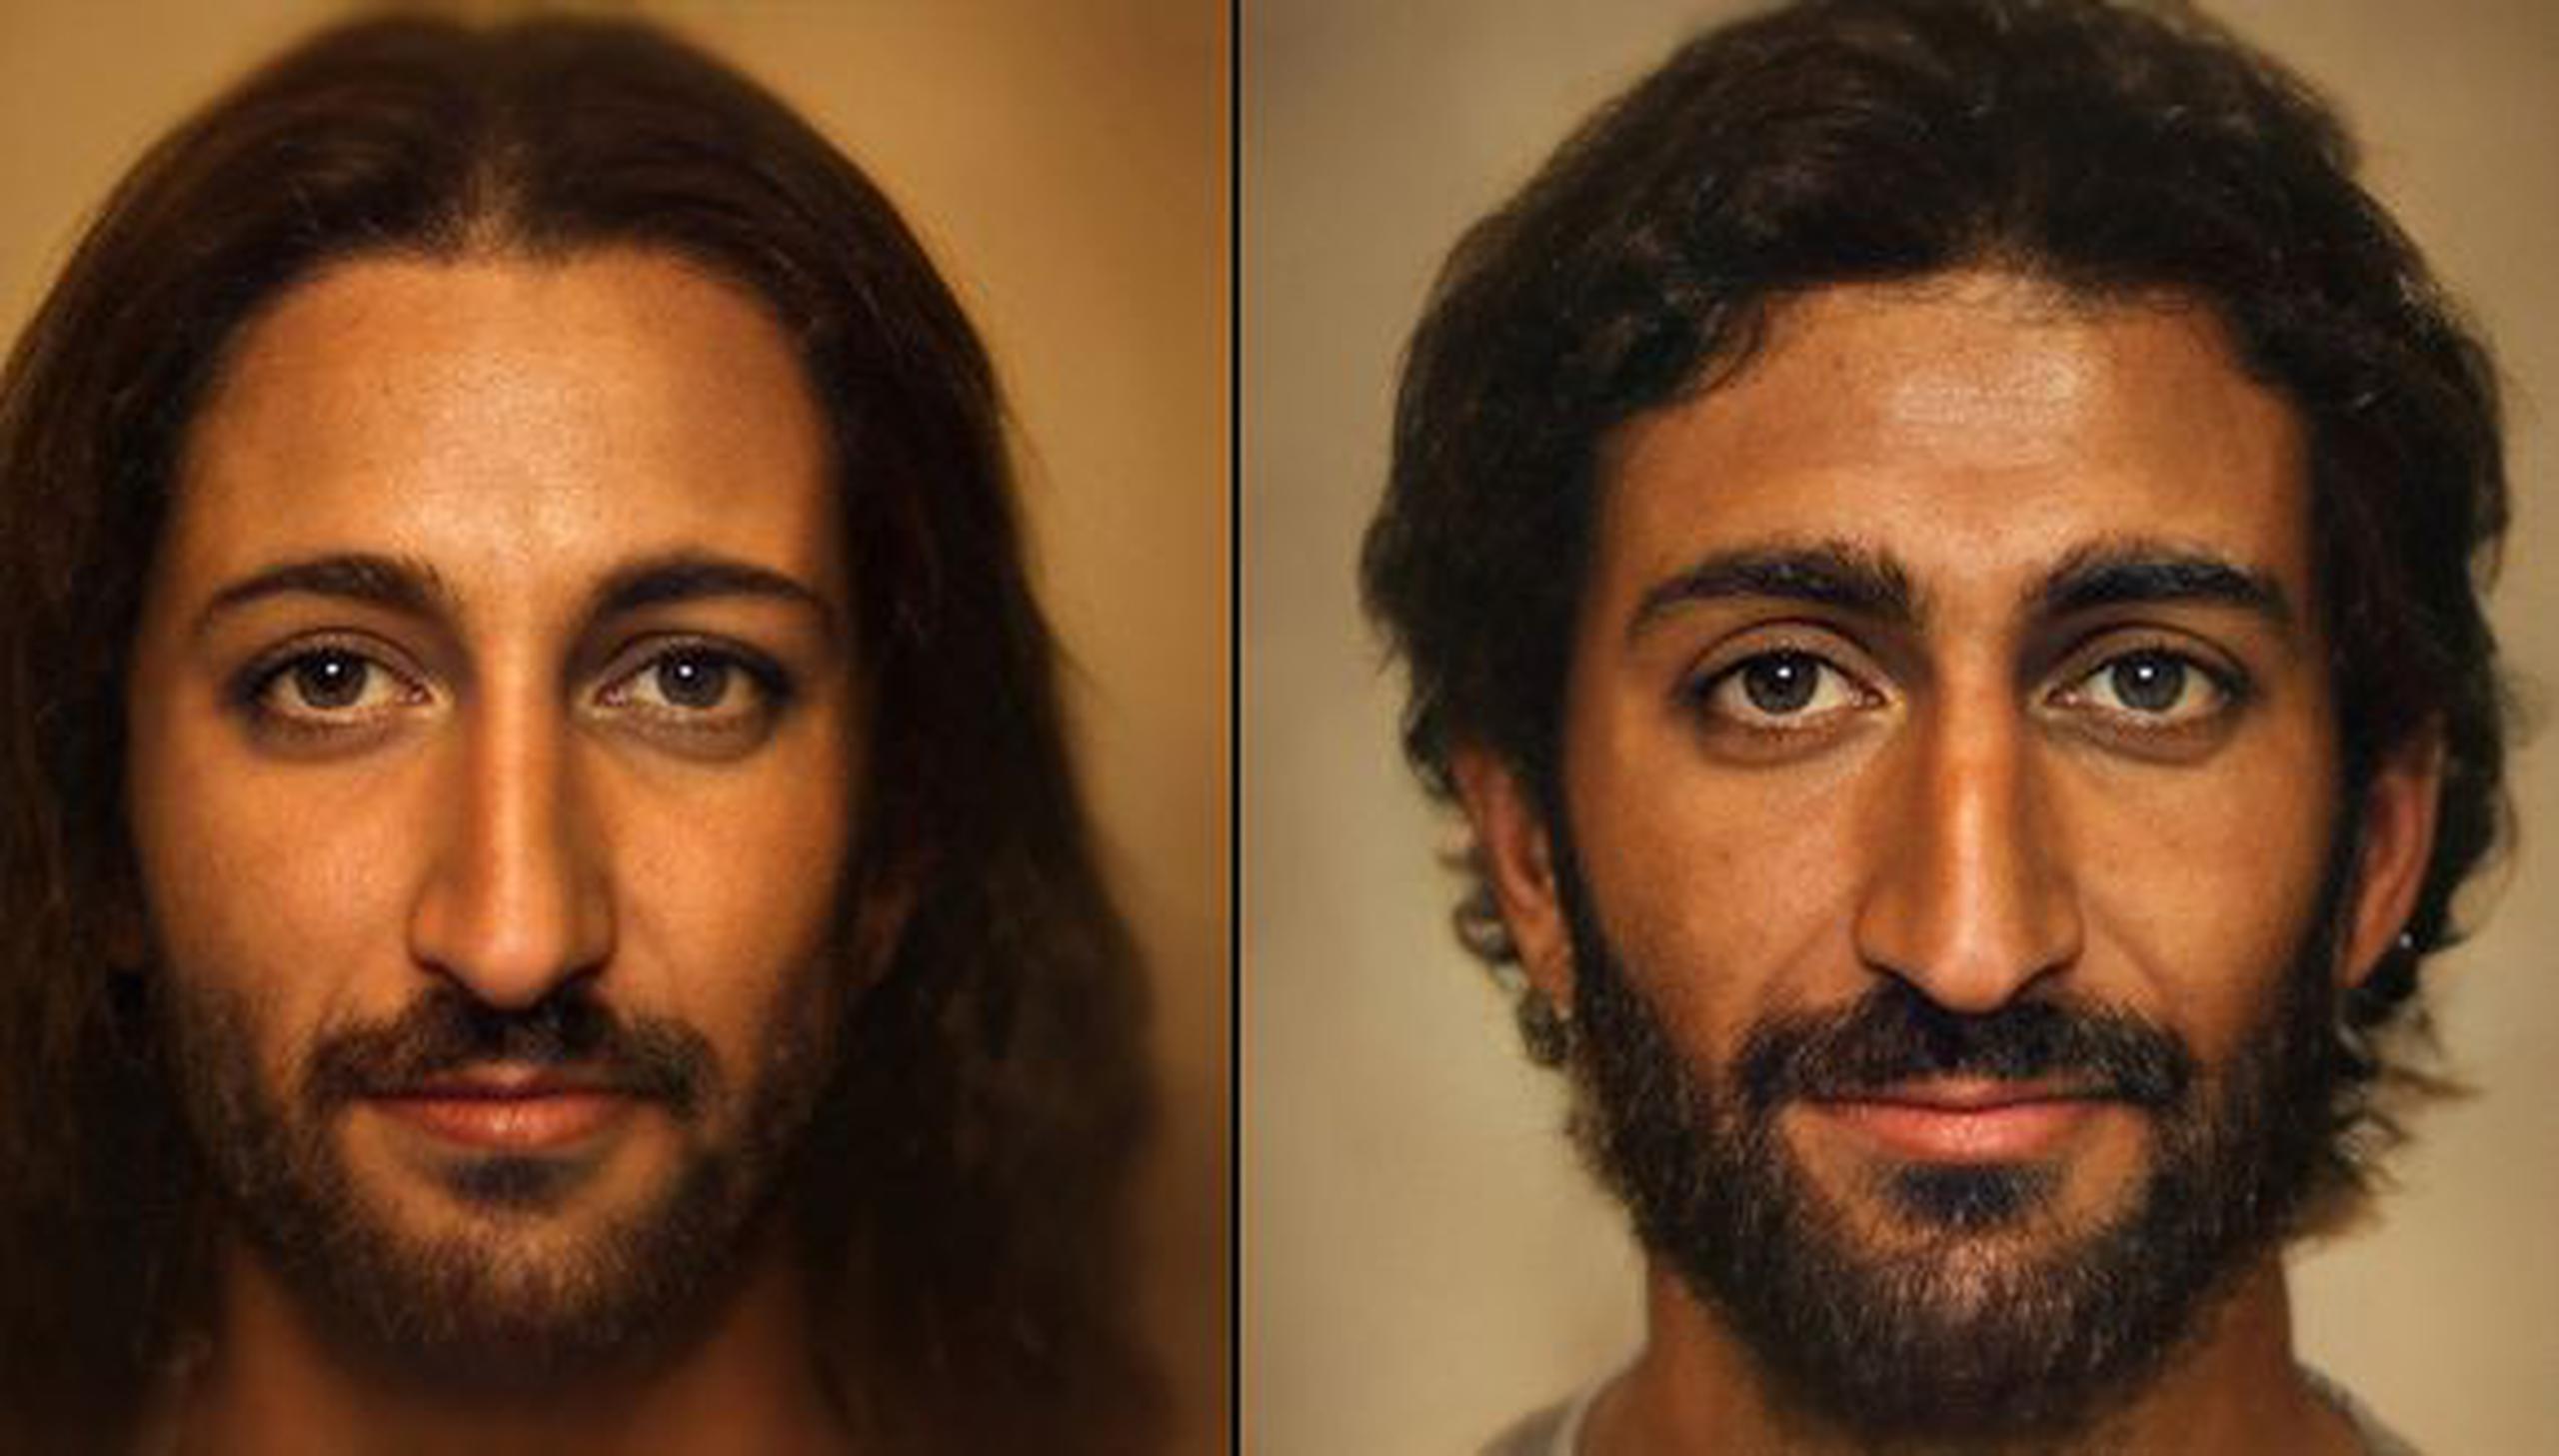 Jesús de Nazaret suele ser representado con el cabello largo, la tez blanca y la cara alargada, pero esta imagen difiere de esta idea. (Foto: Bas Uterwijk)